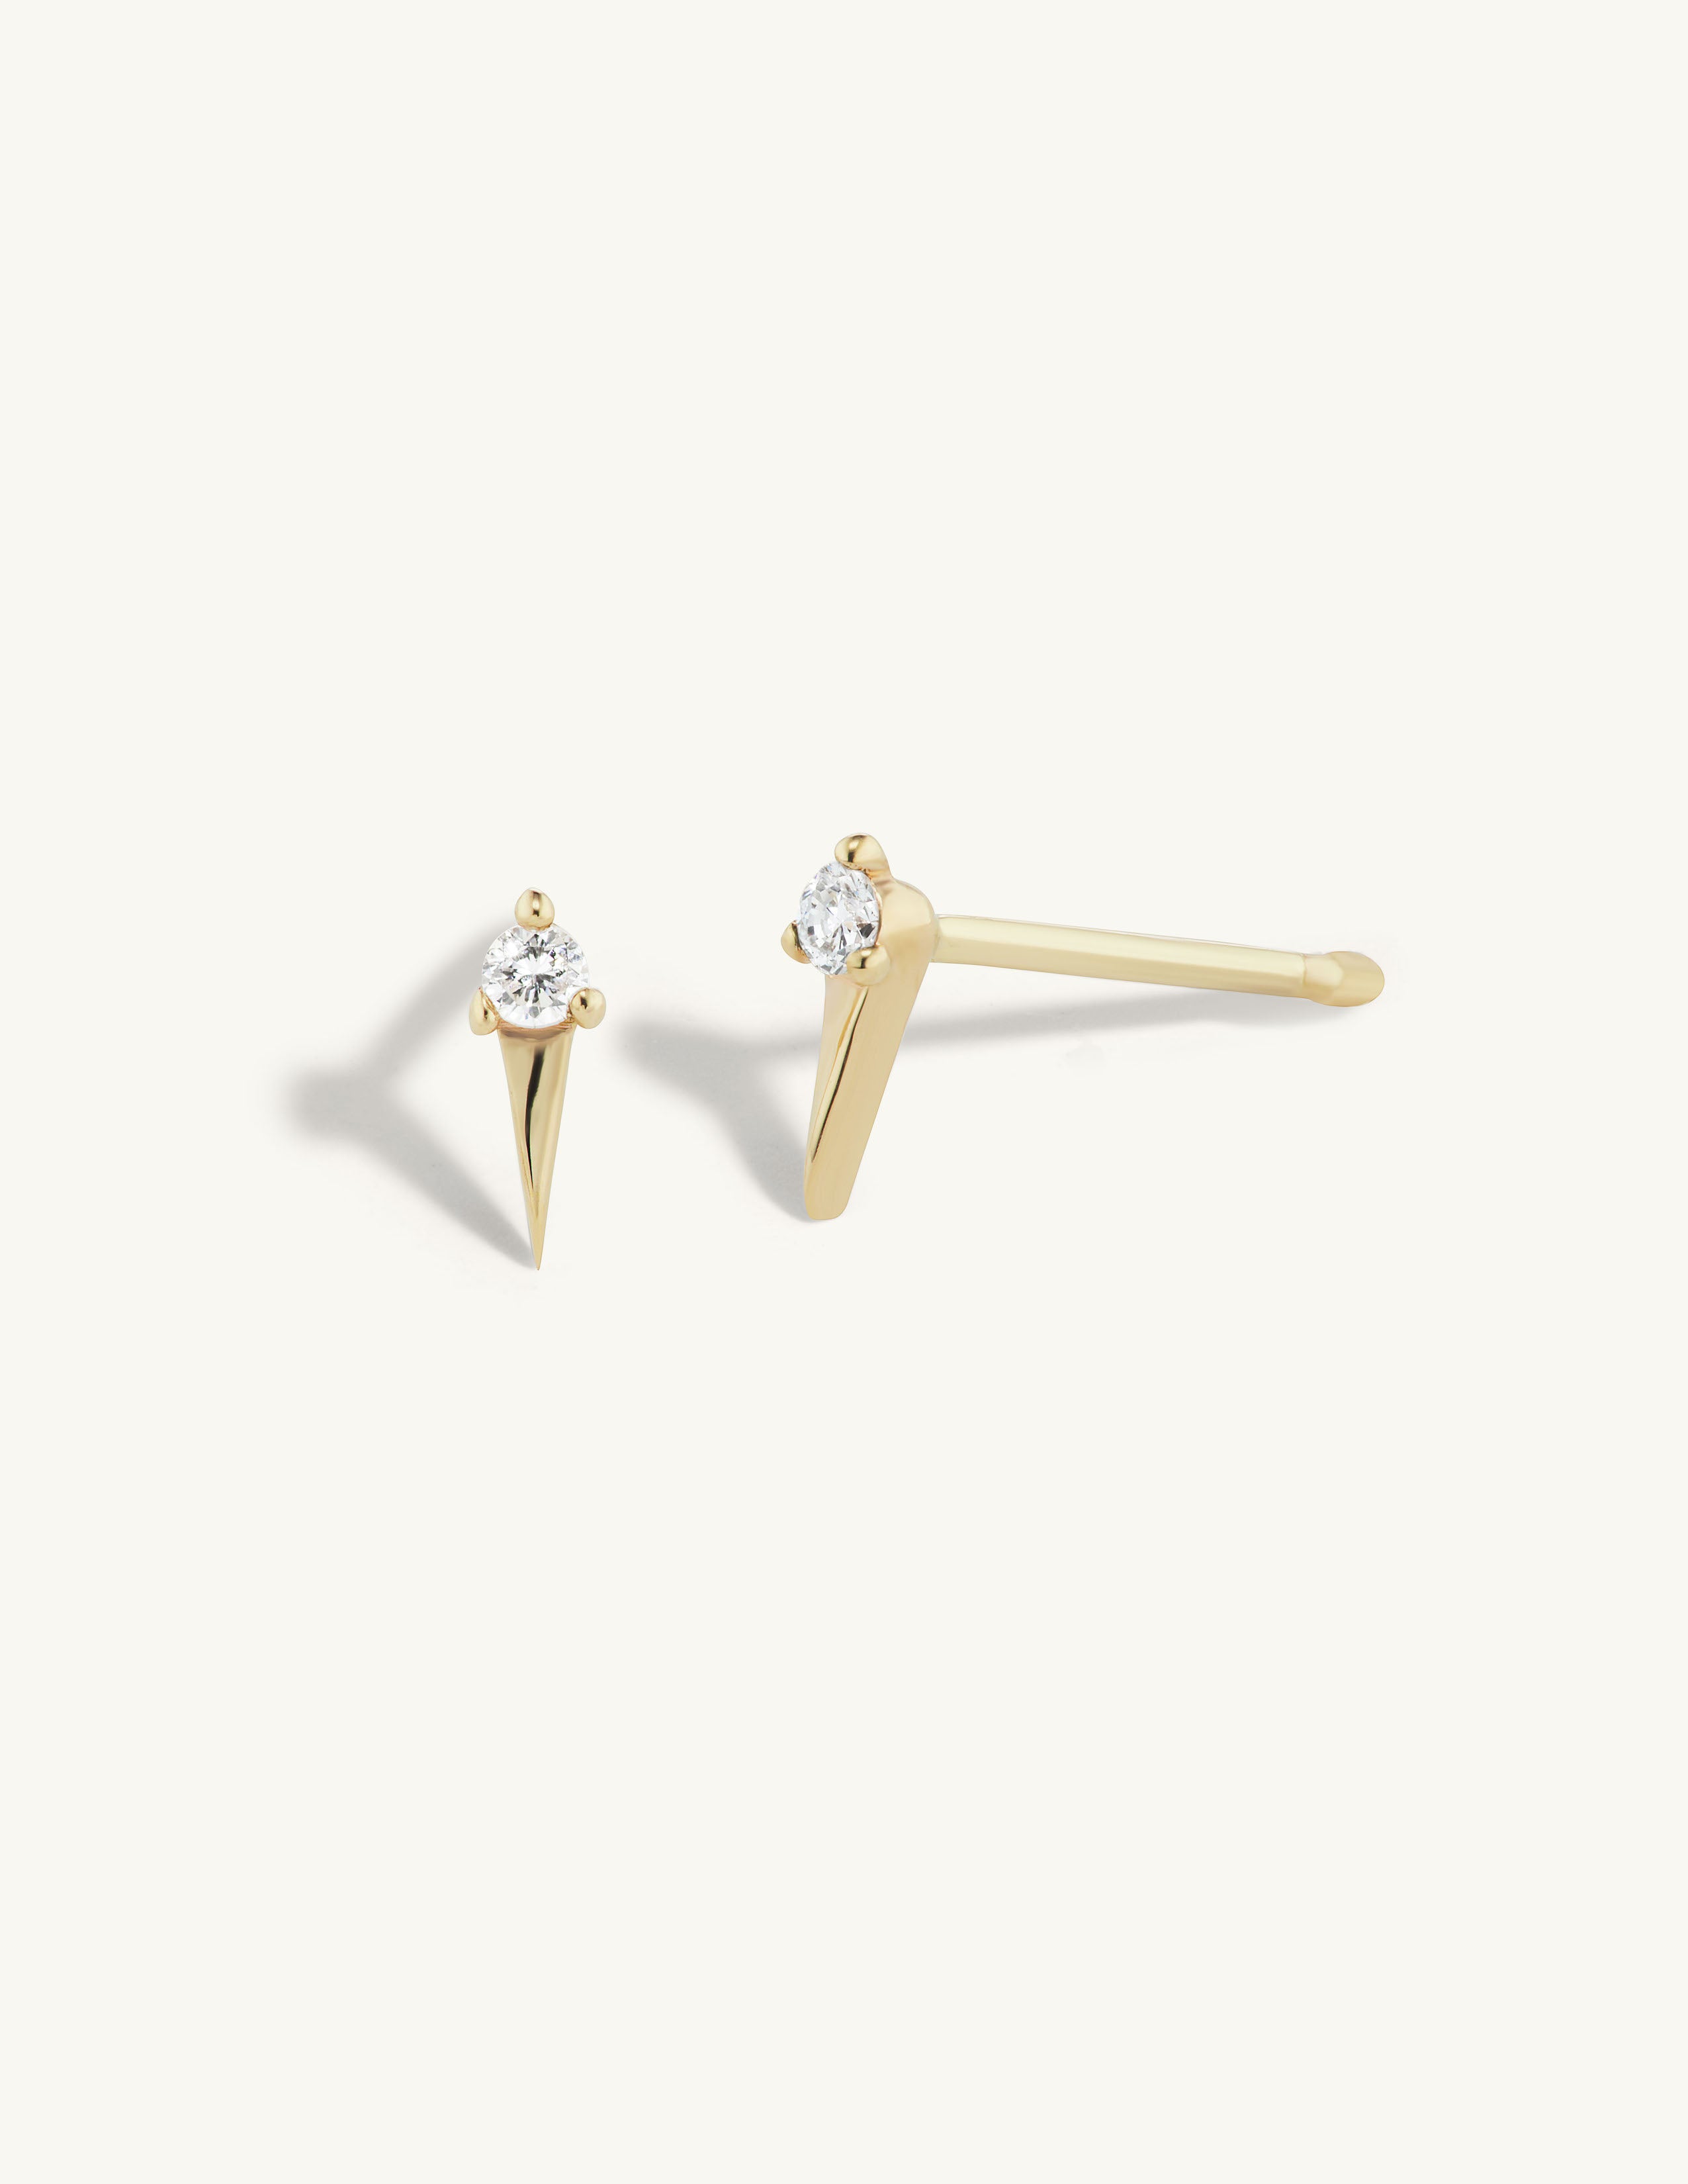 Single Diamond Spike Stud Earrings in 14K White Gold